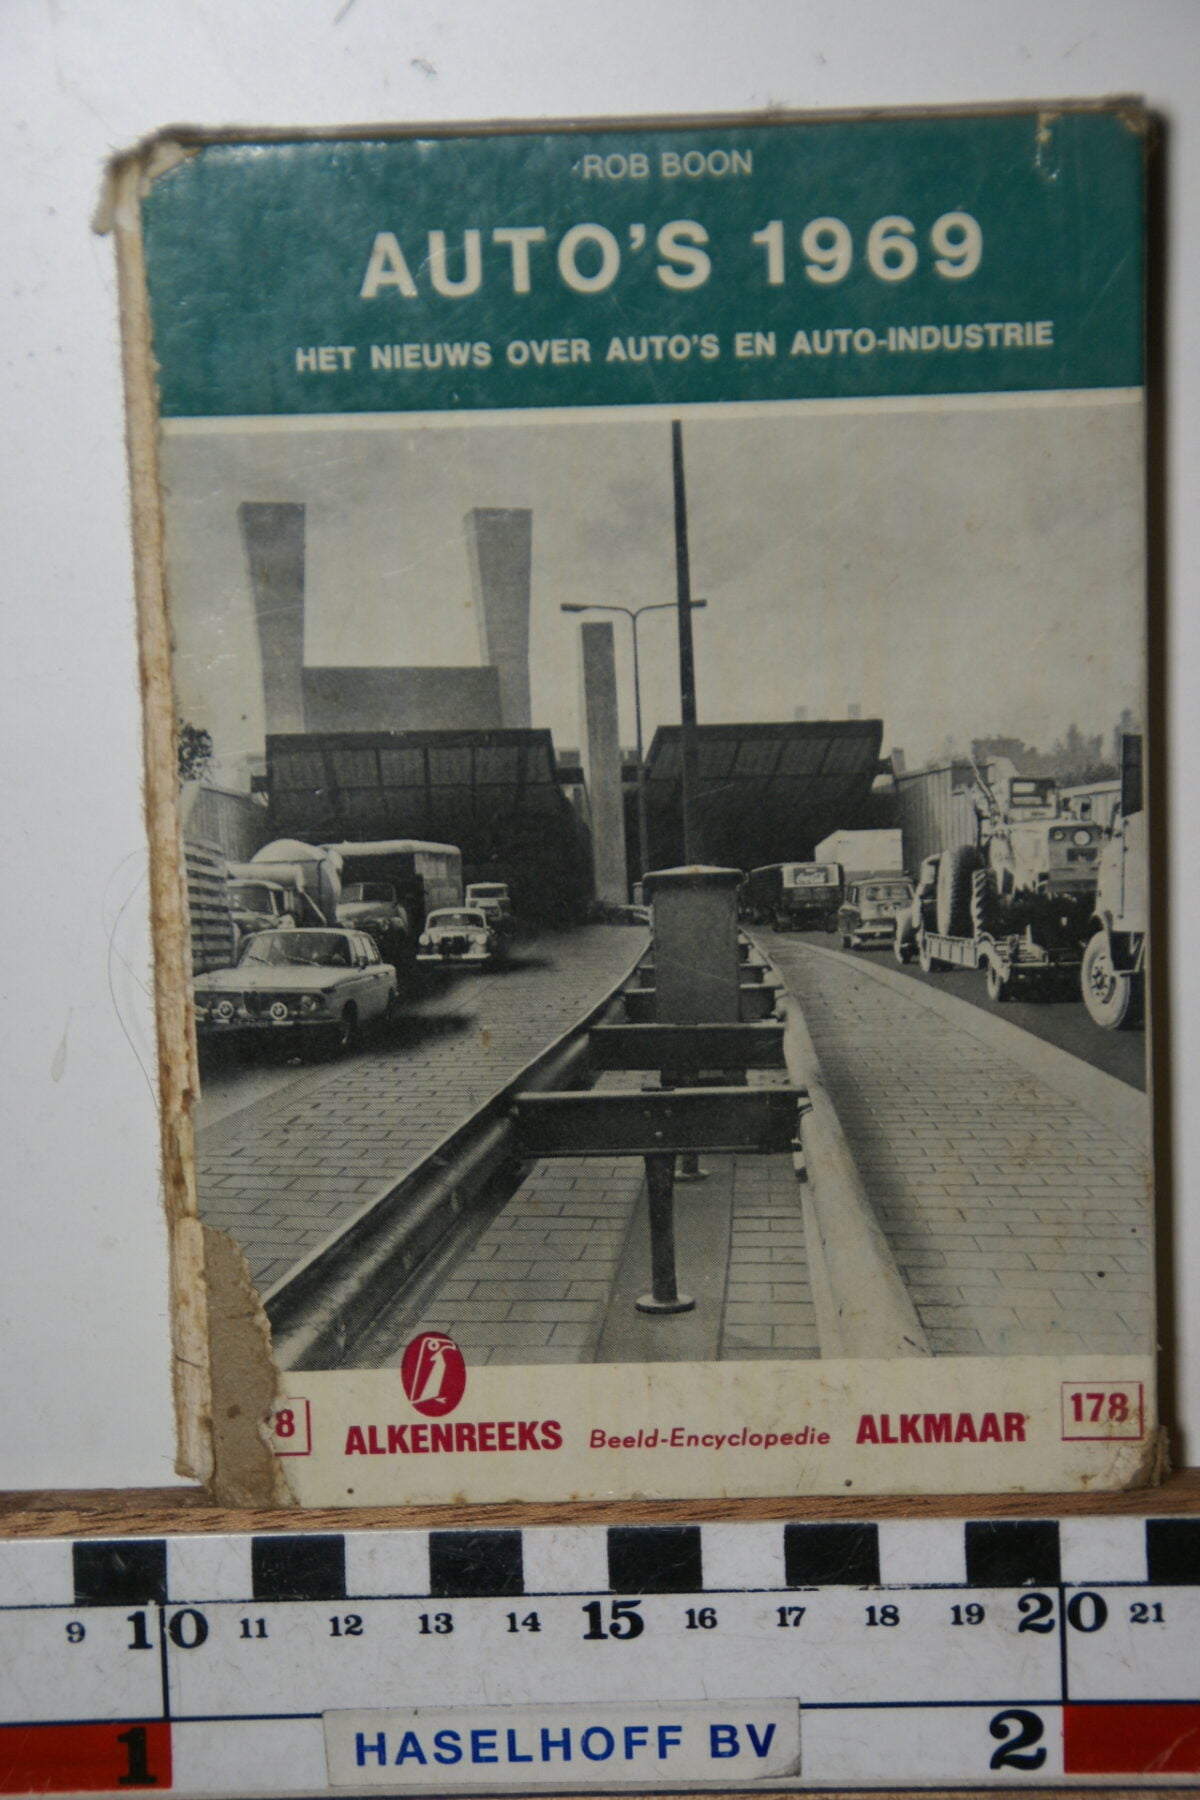 DSC02833 1969 boek Alkenreeks auto's nr 178-afb7fff4